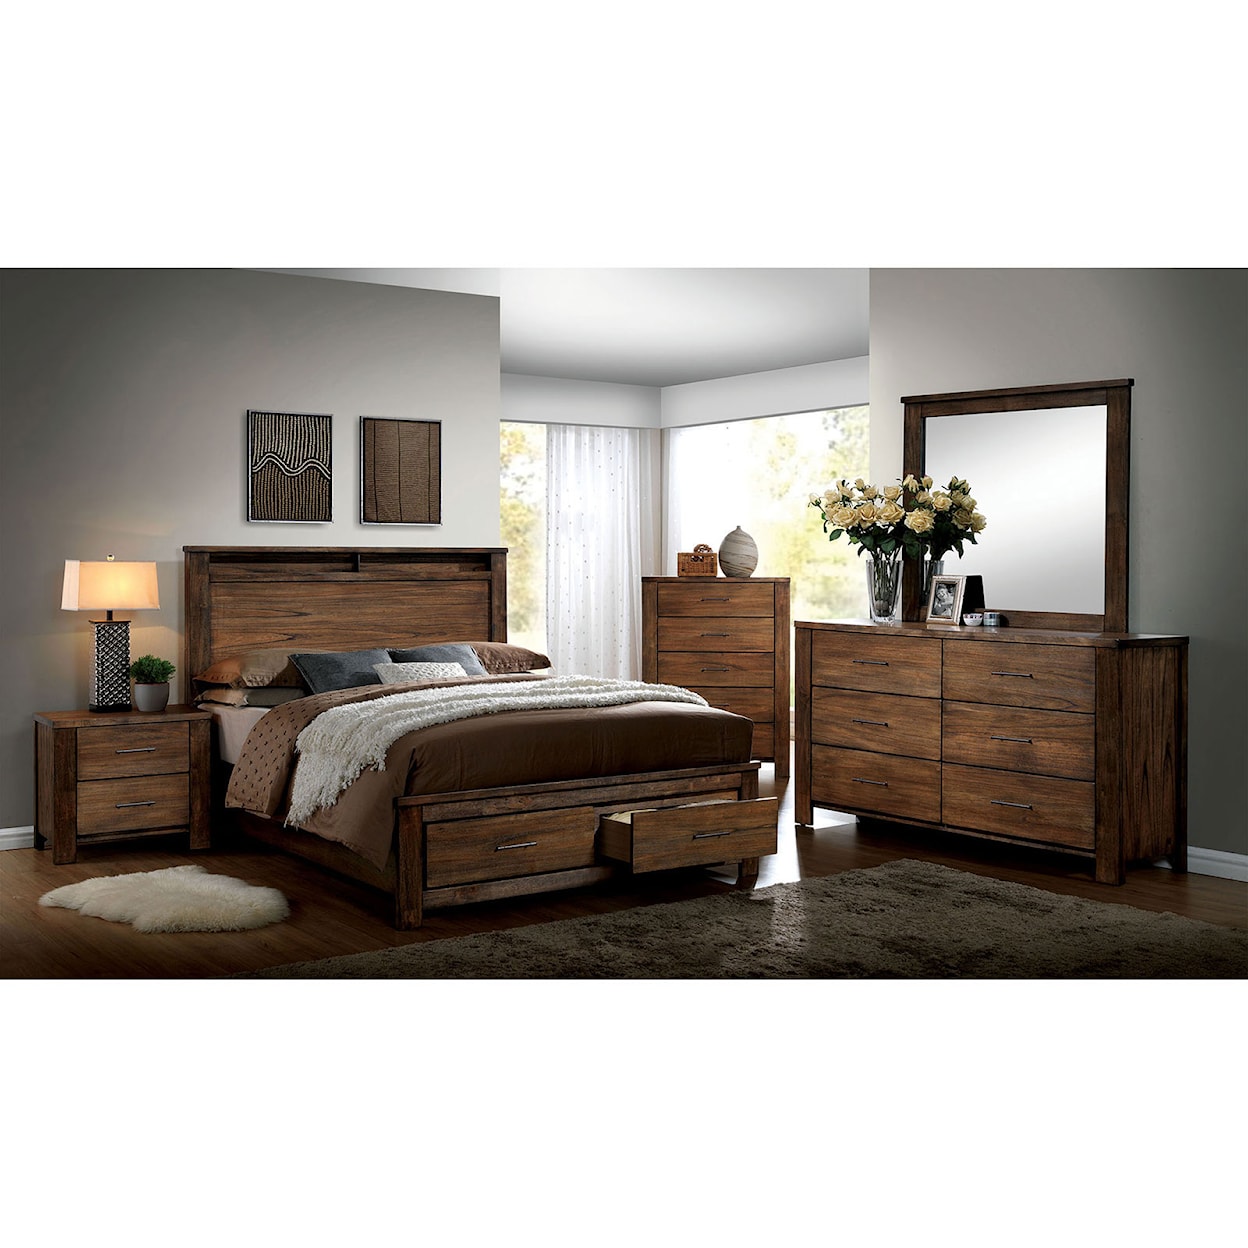 Furniture of America Elkton 5-Piece Queen Bedroom Set